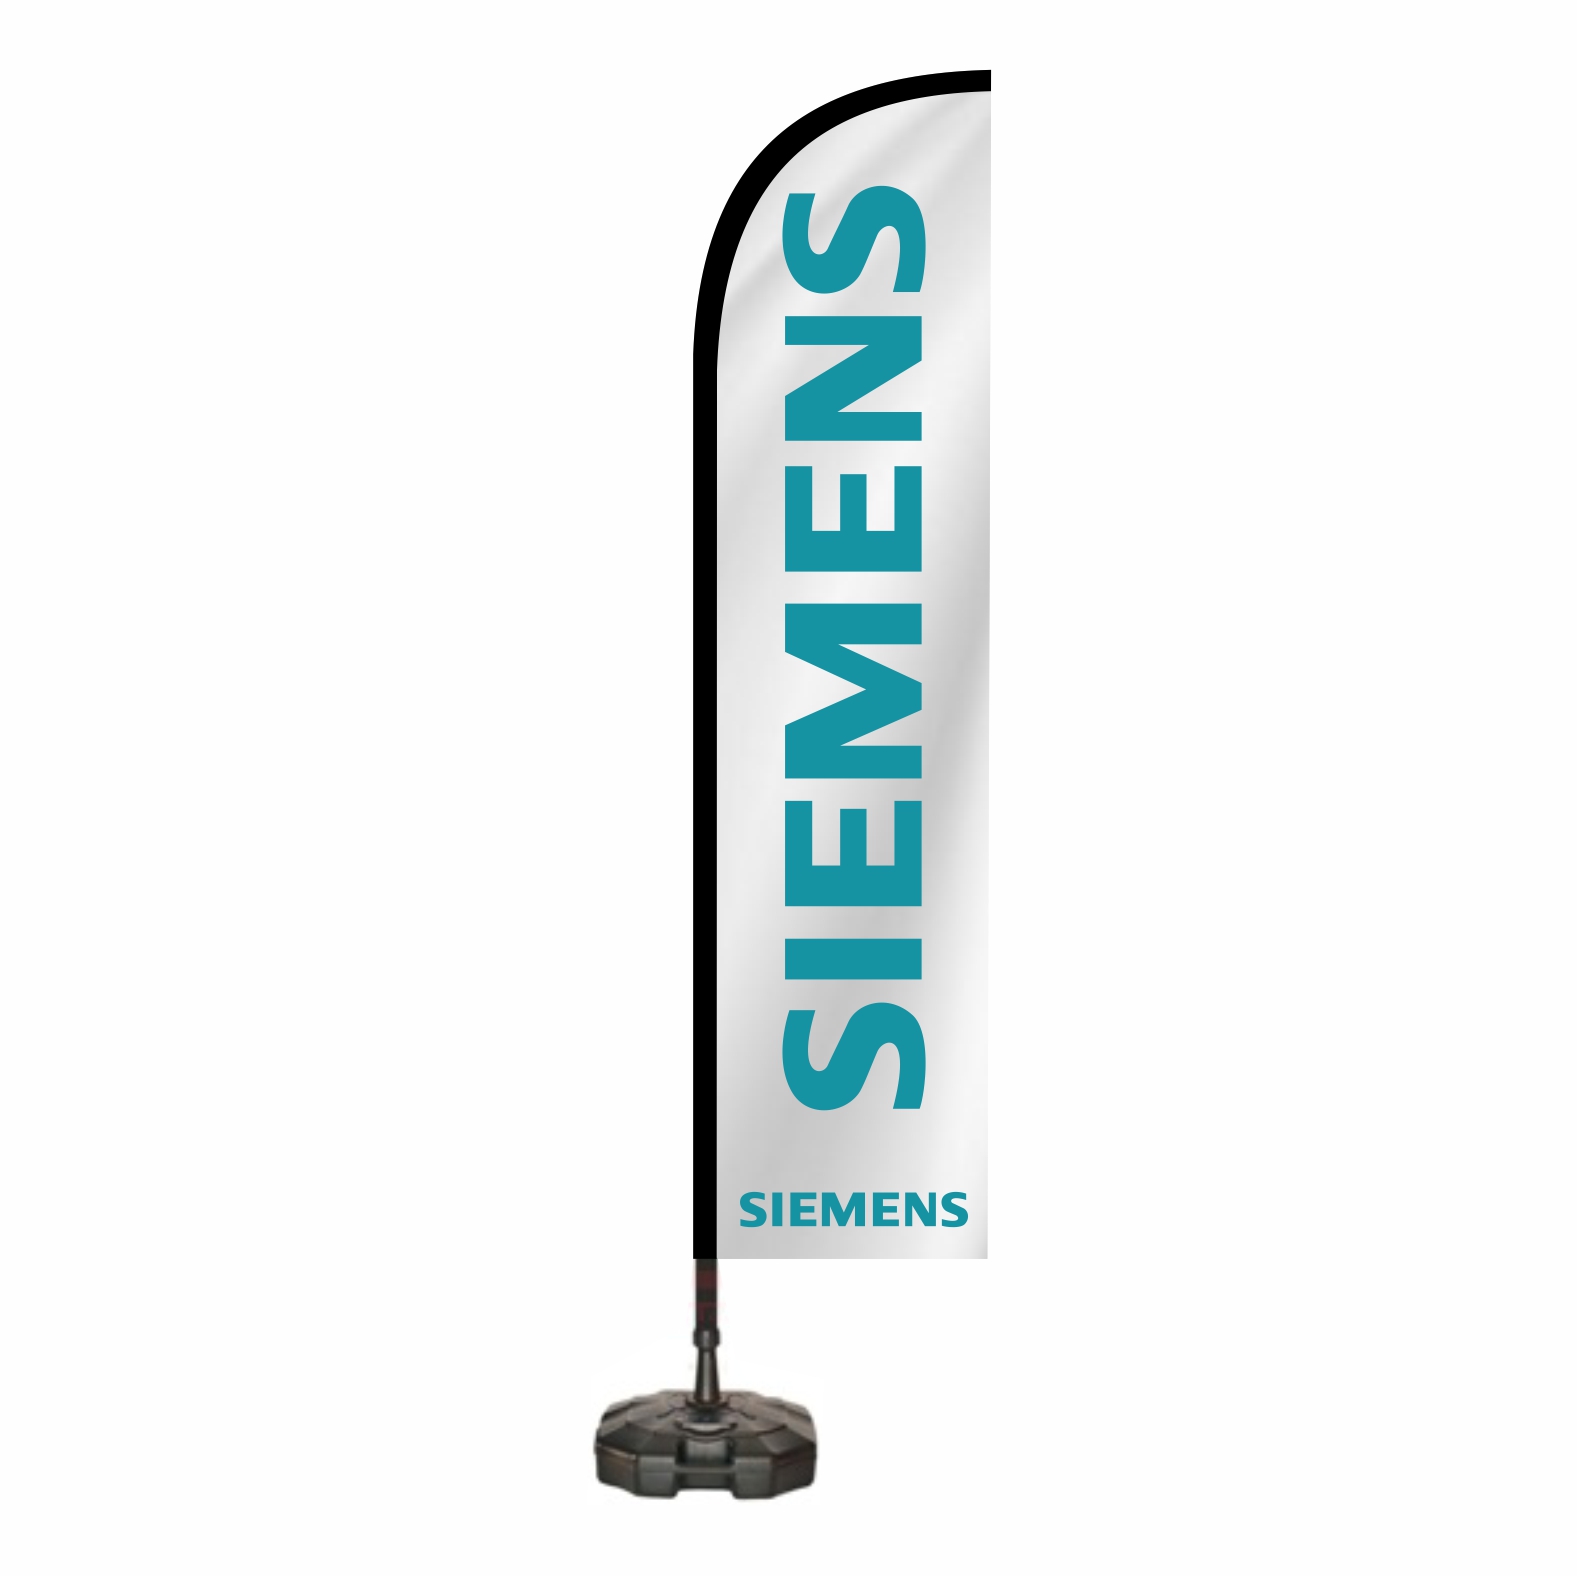 Siemens Oltal Bayra Toptan Alm